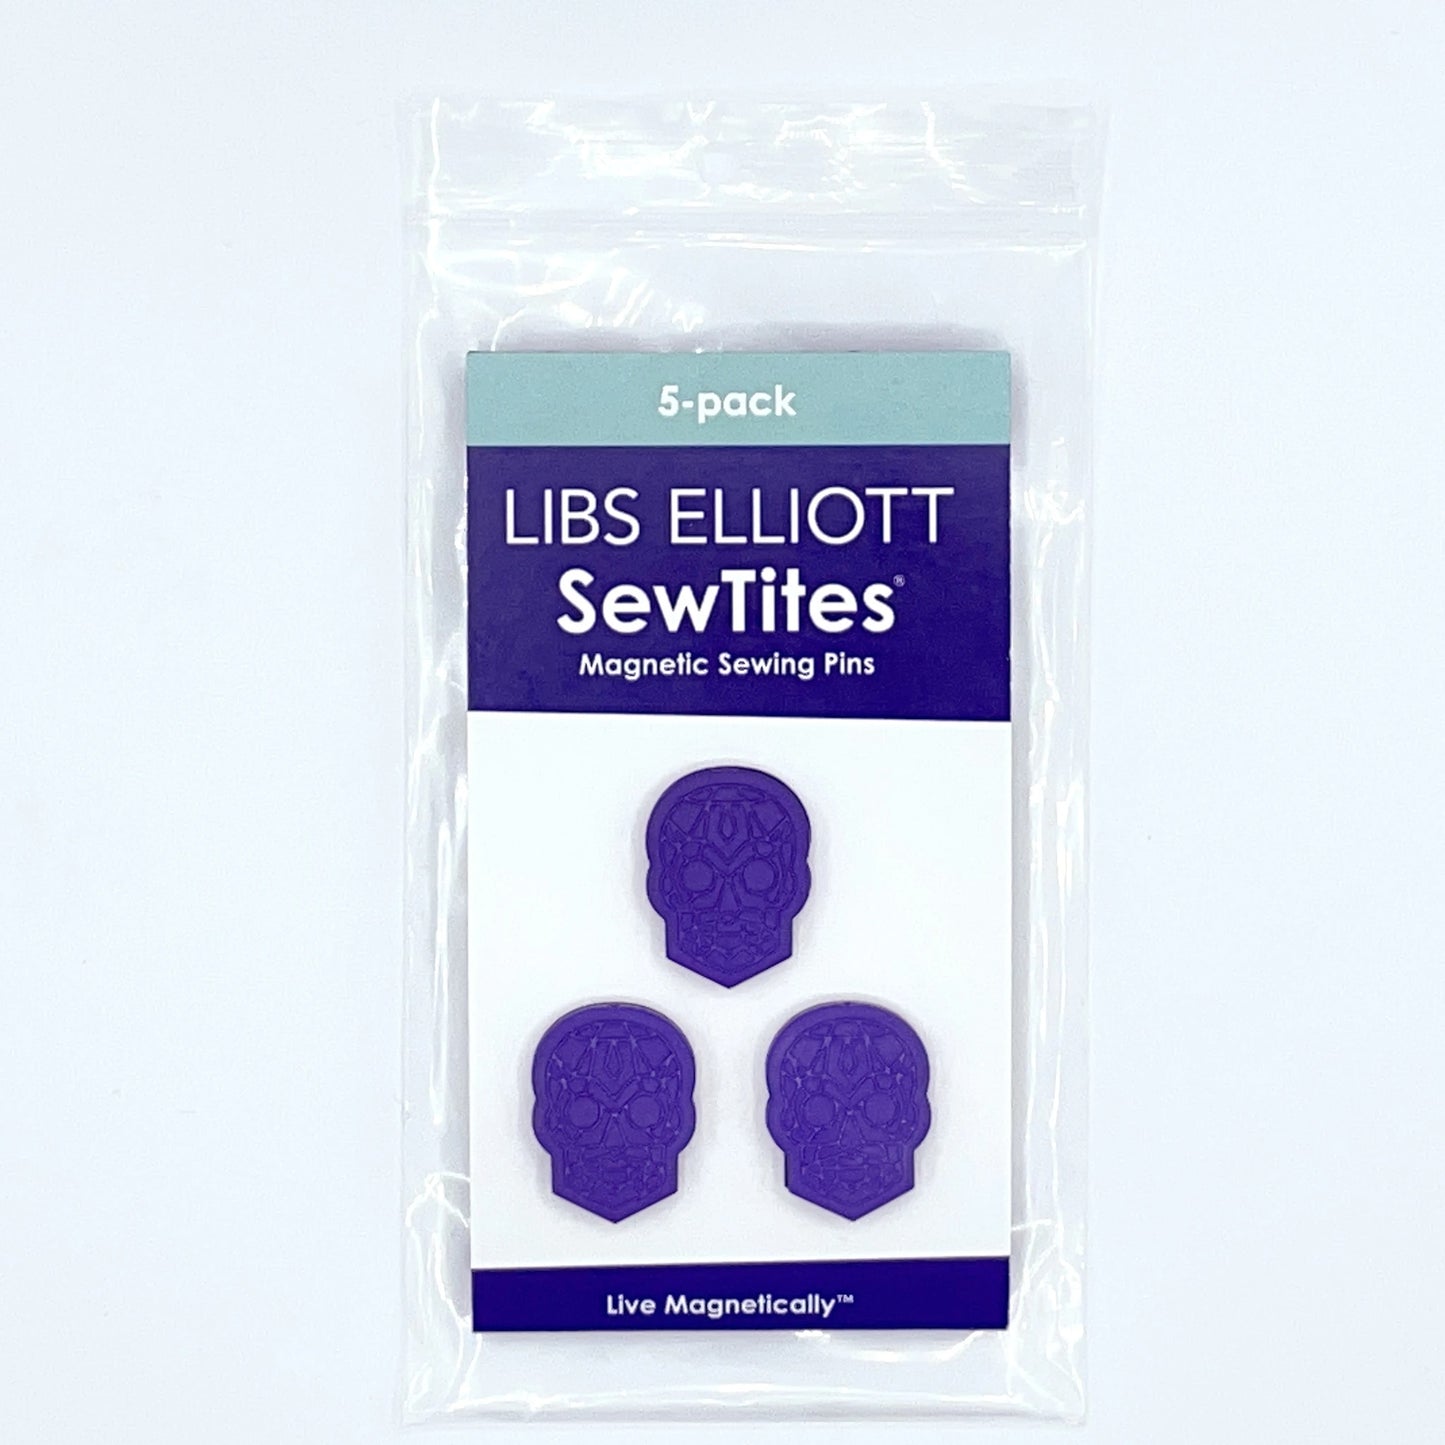 LIMITED EDITION SewTites - Libs Elliott